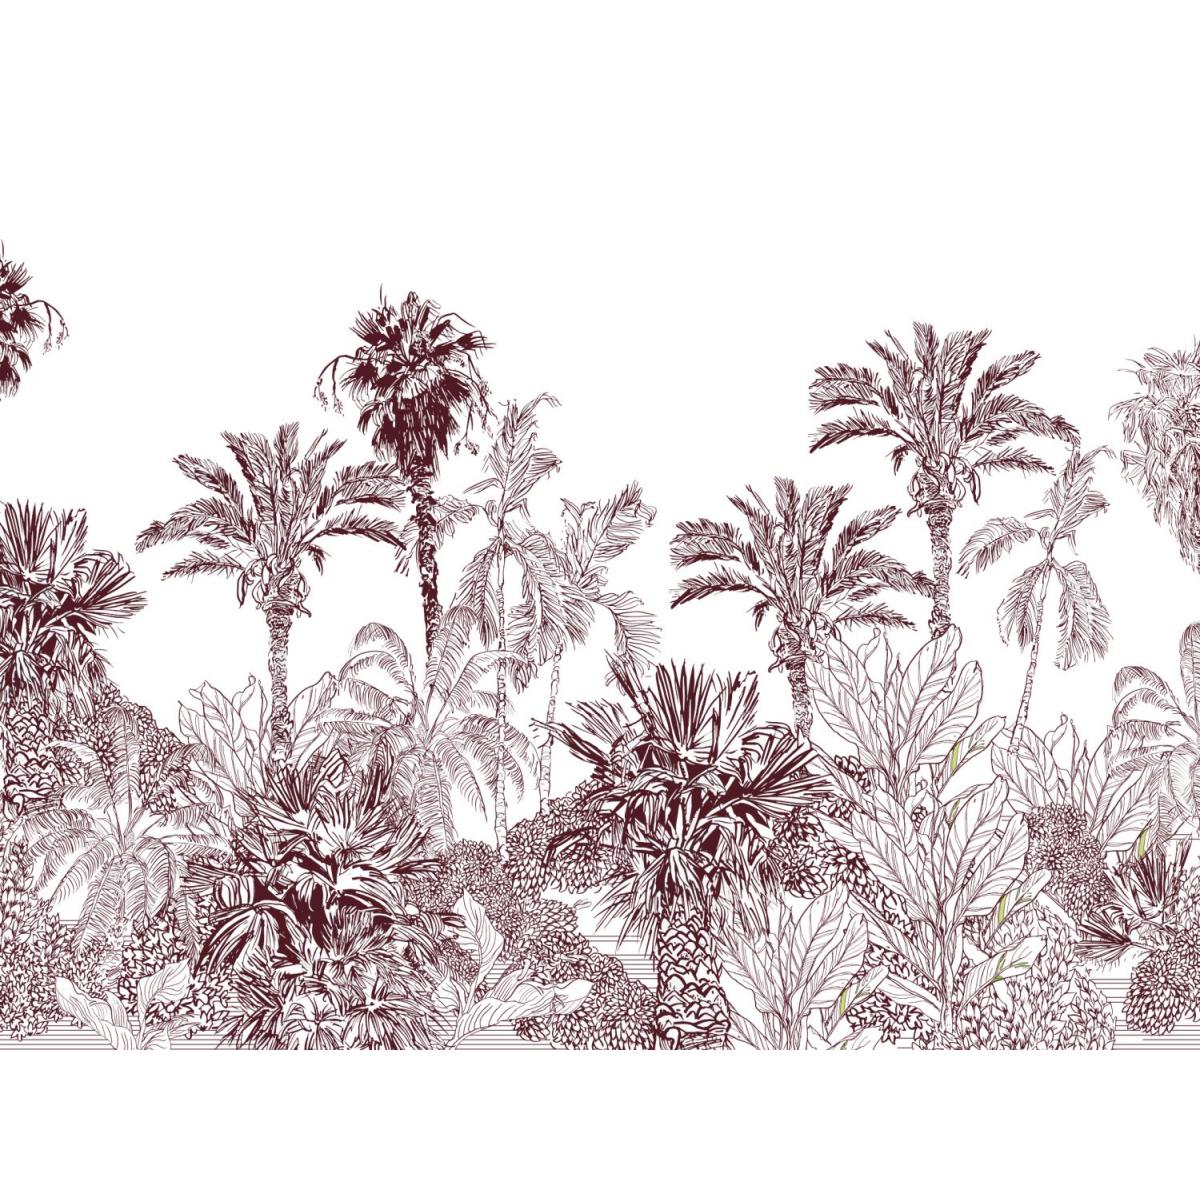 Papier peint Sanders & Sanders Sanders & Sanders papier peint panoramique paysage tropical bordeaux